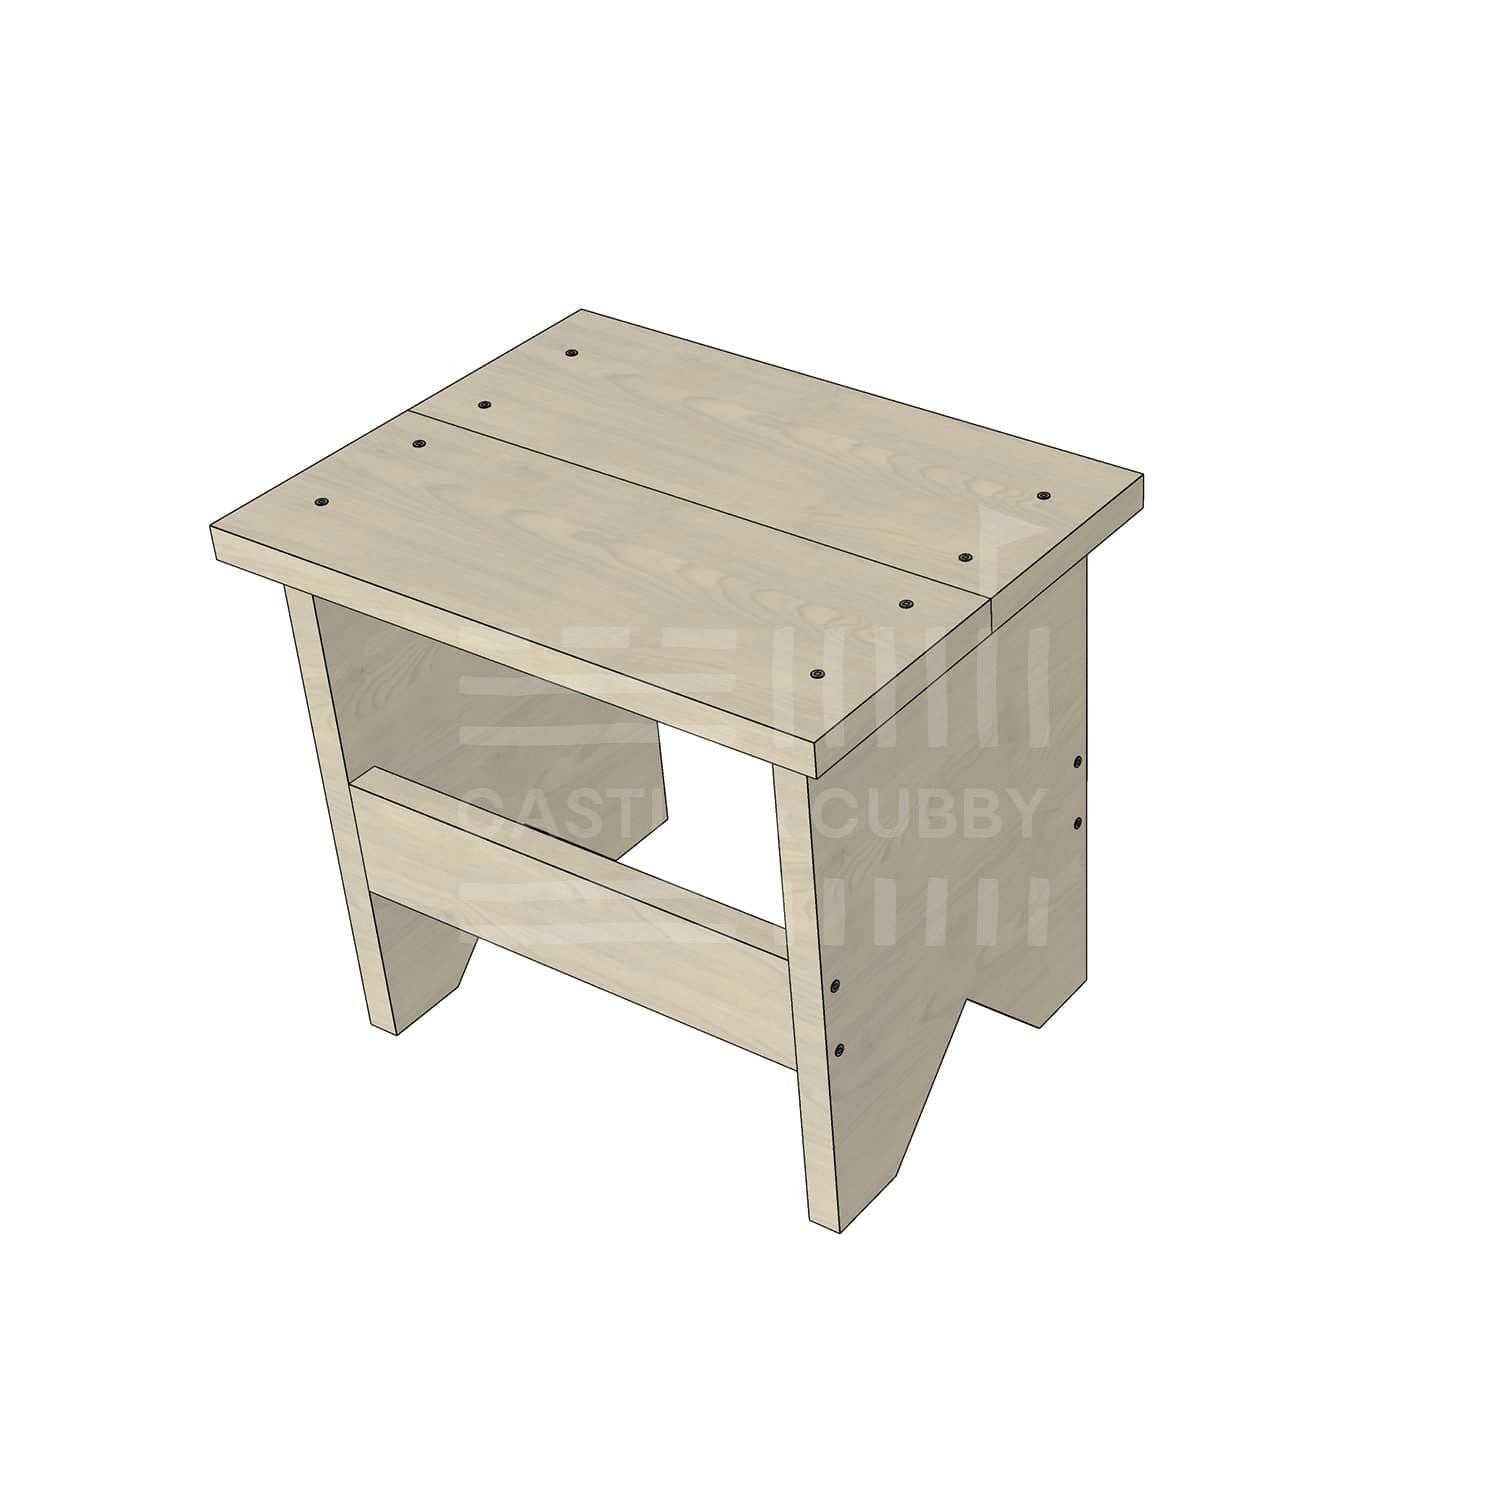 Wooden standard size carpenter stool